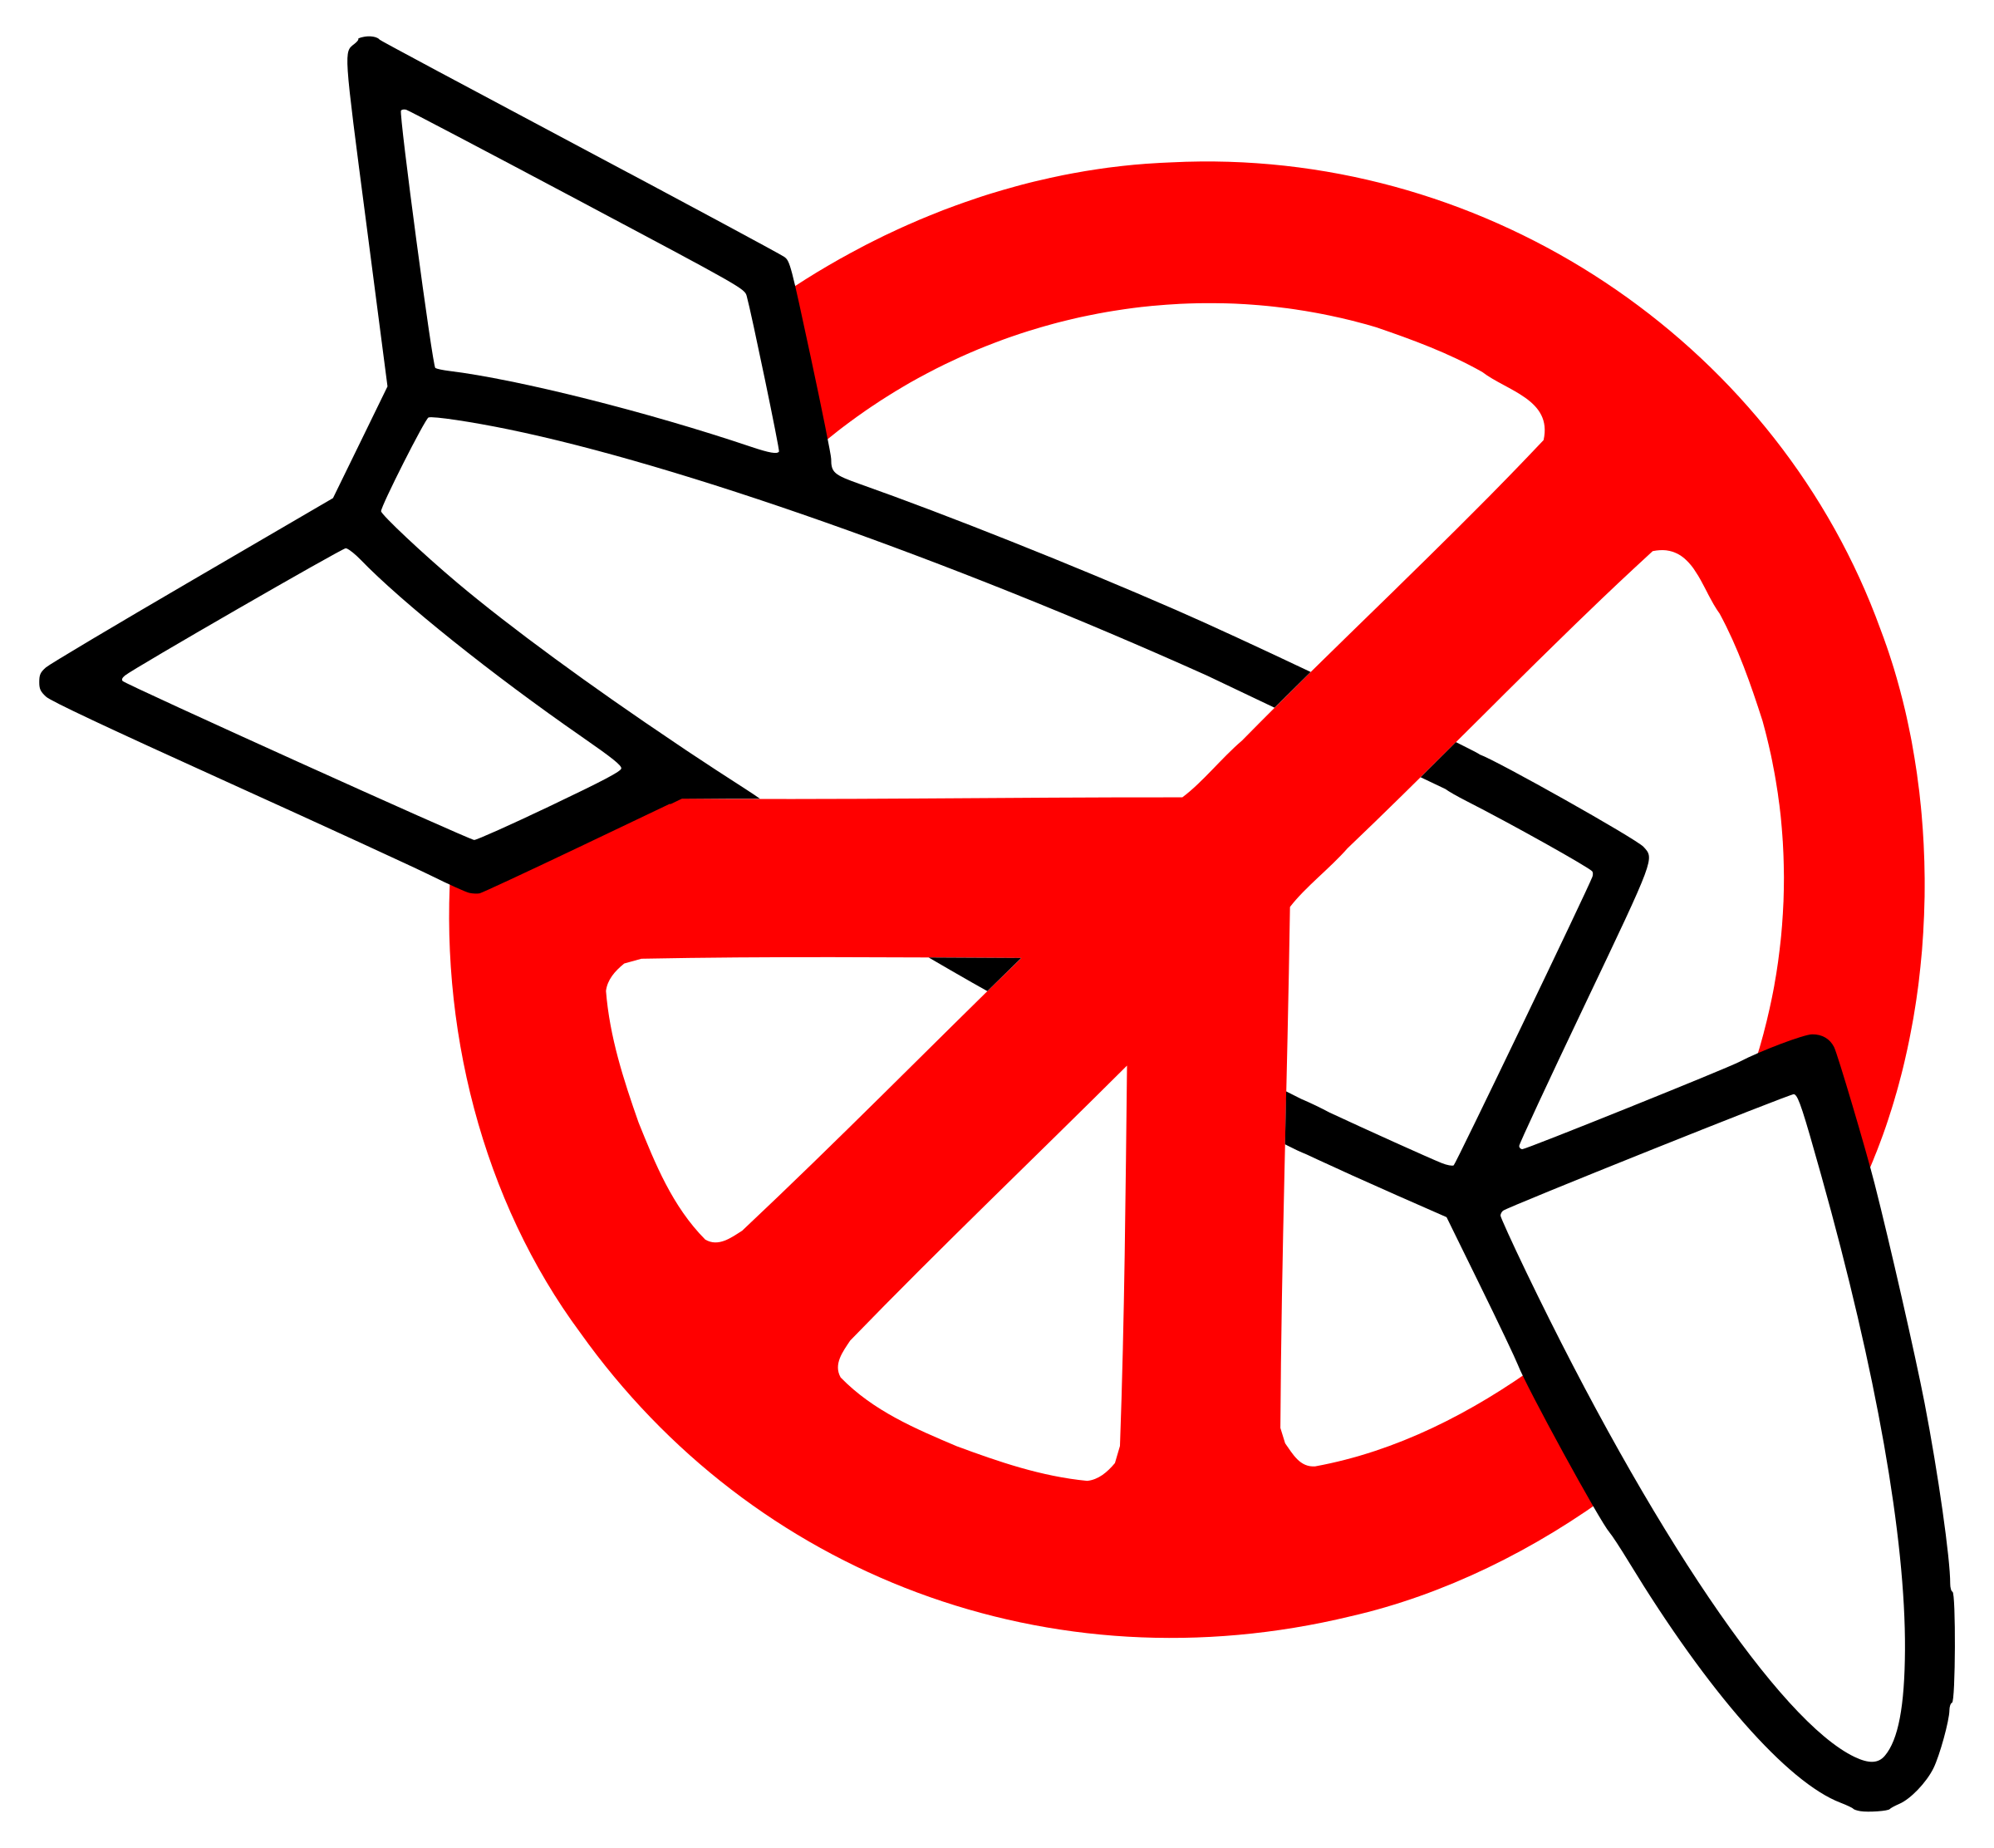 peace - no war SVG Clip arts